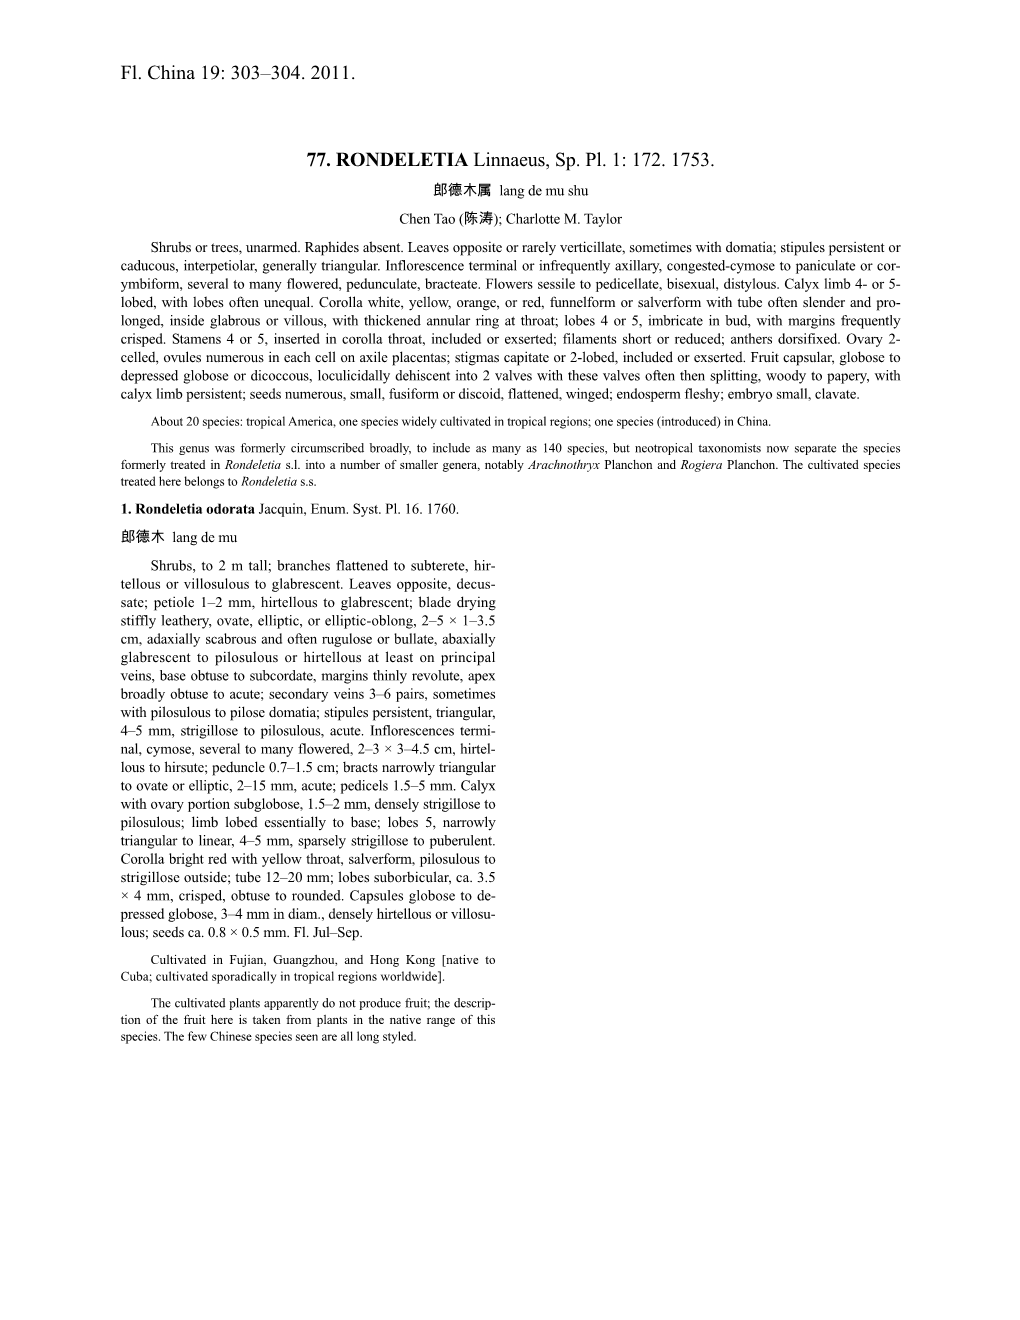 Rondeletia (PDF)